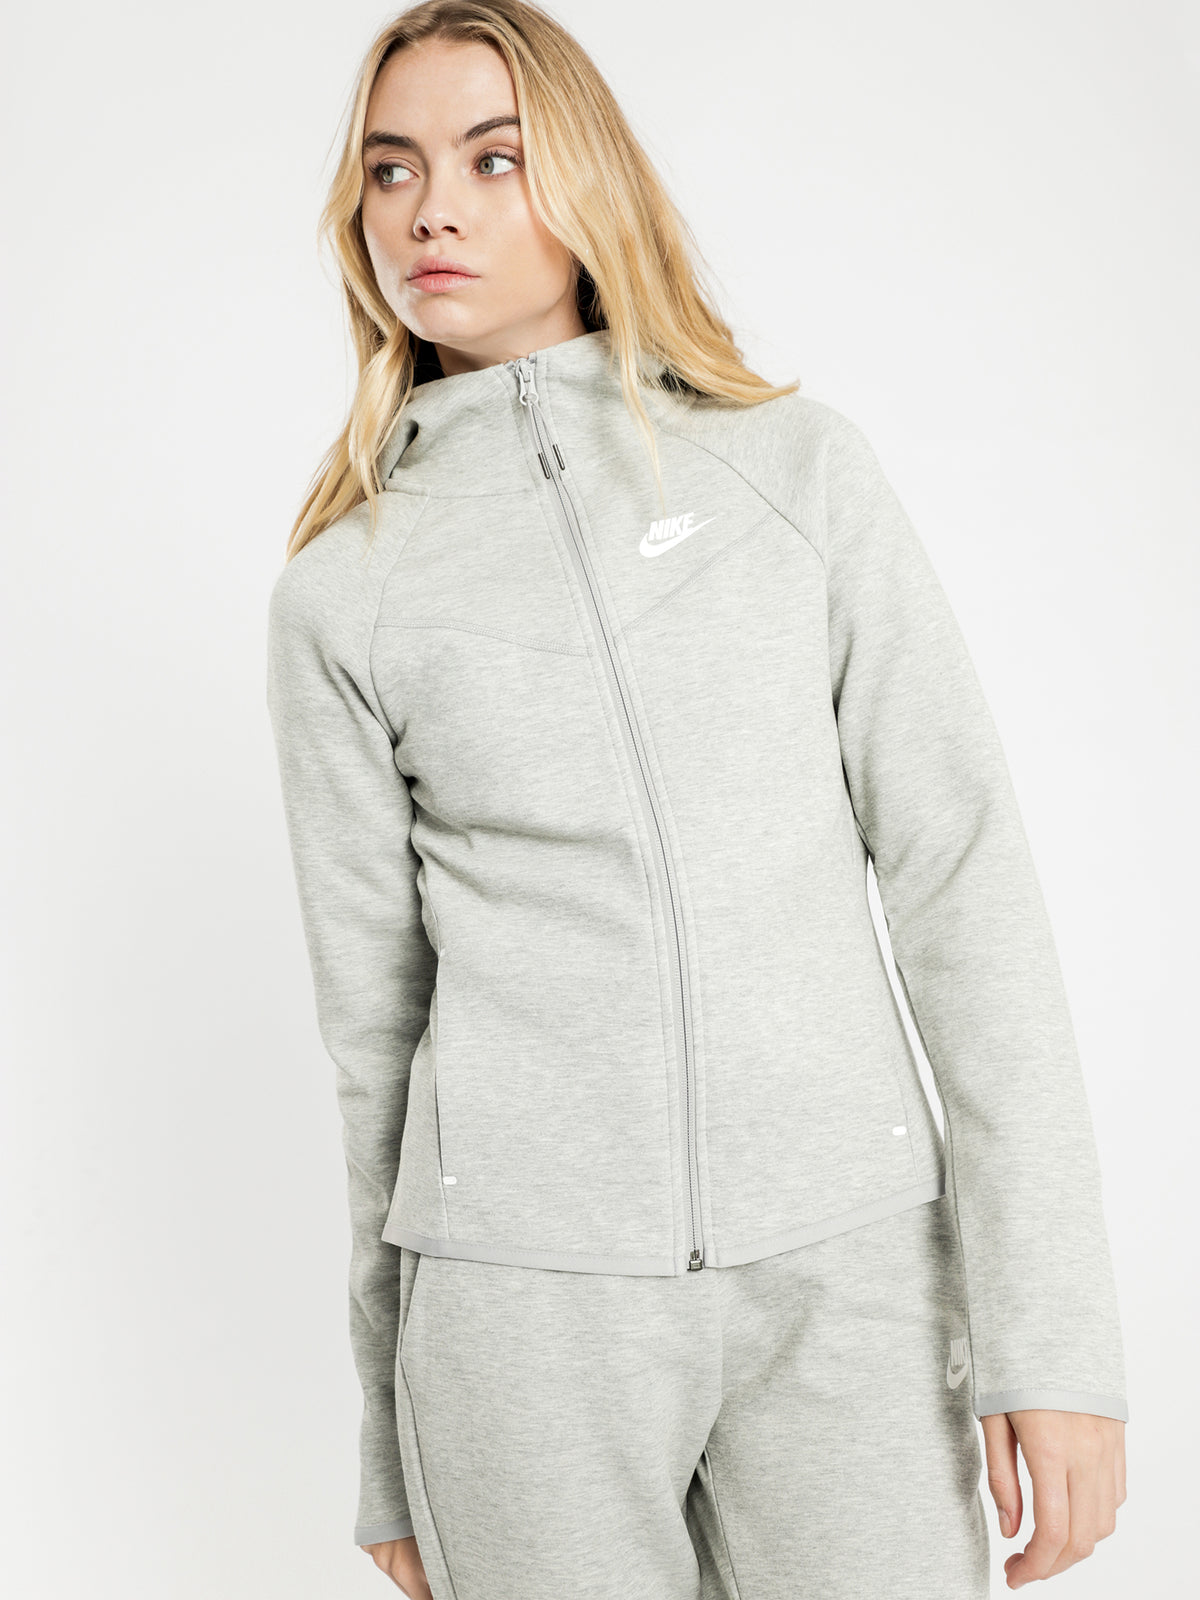 Sportswear Tech Fleece Zip Hoodie in Grey - Glue Store